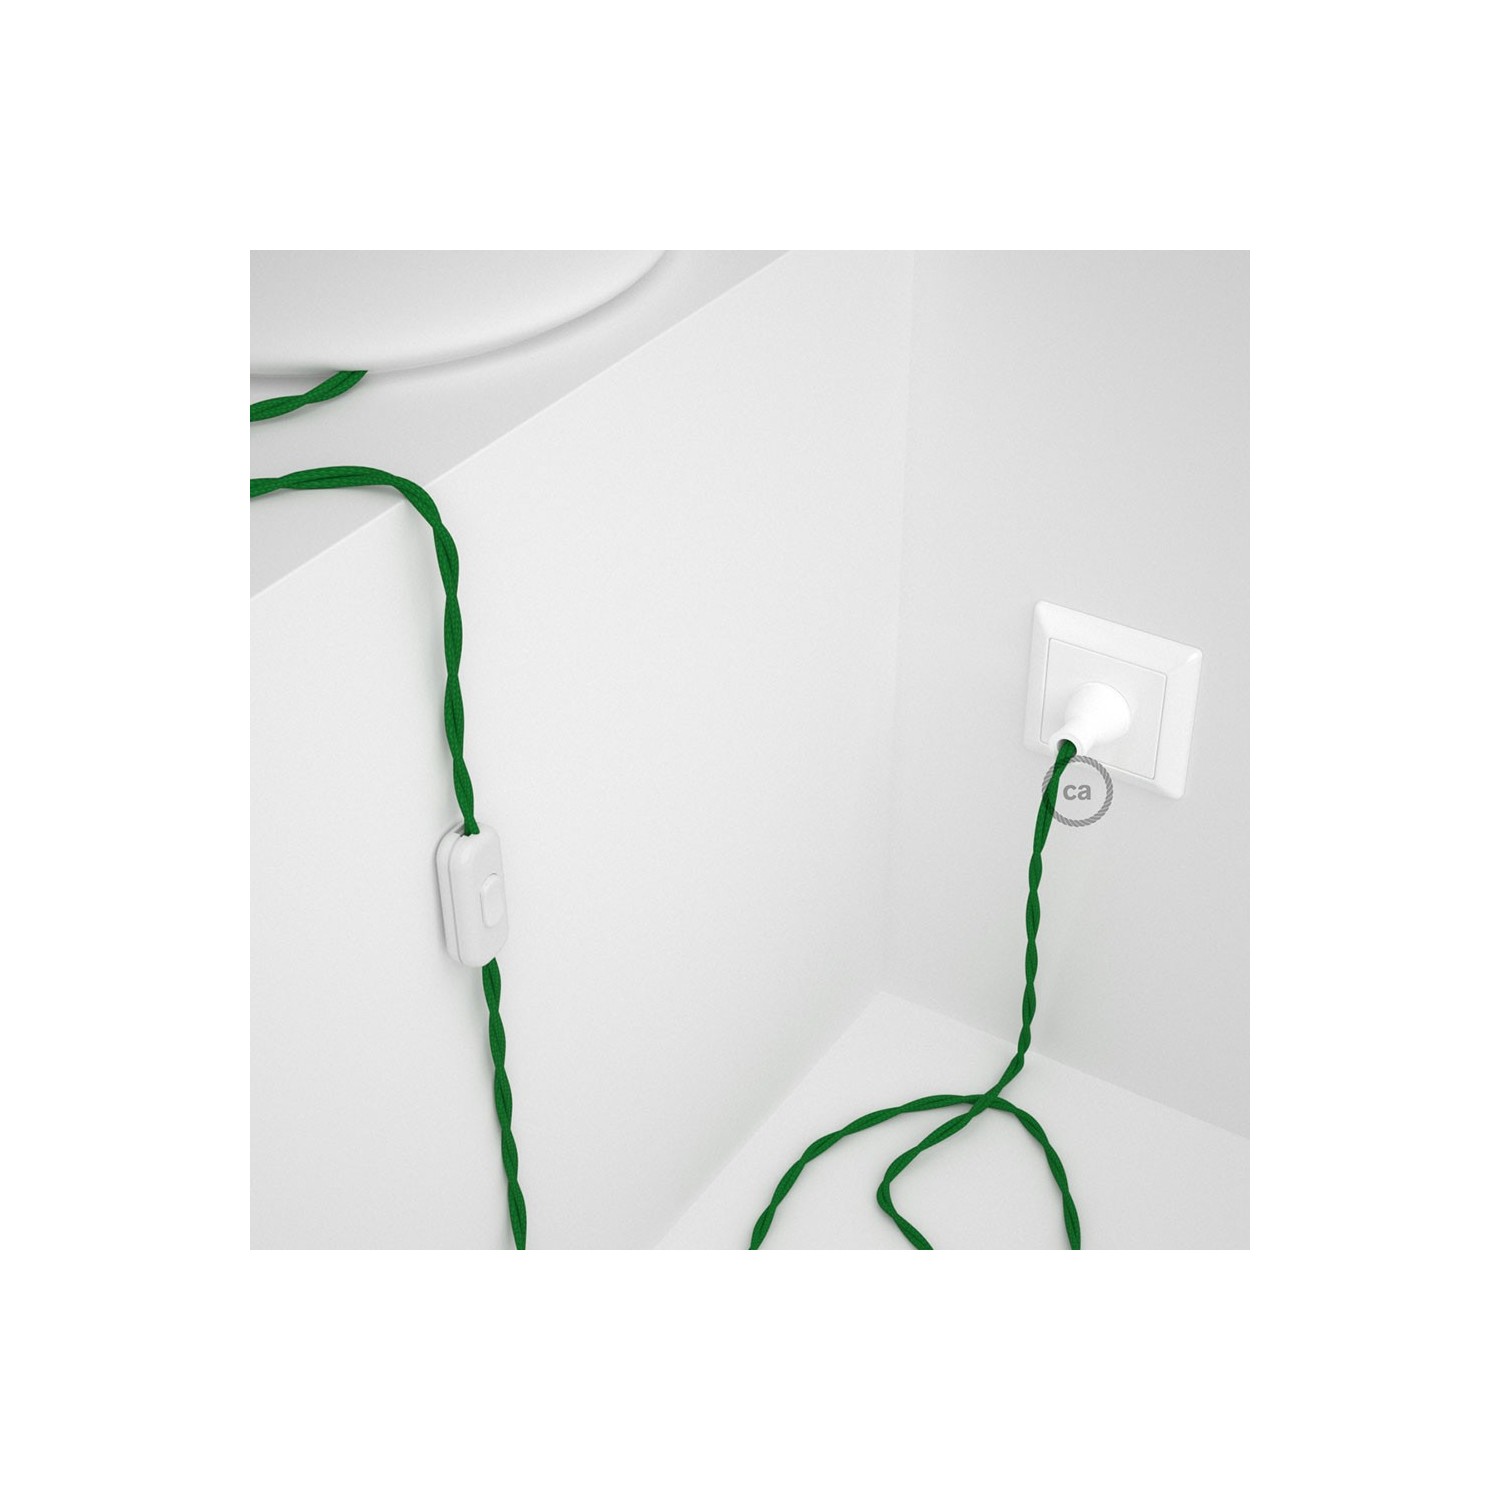 Cableado para lámpara de mesa, cable TM06 Rayón Verde 1,8 m. Elige el color de la clavija y del interruptor!